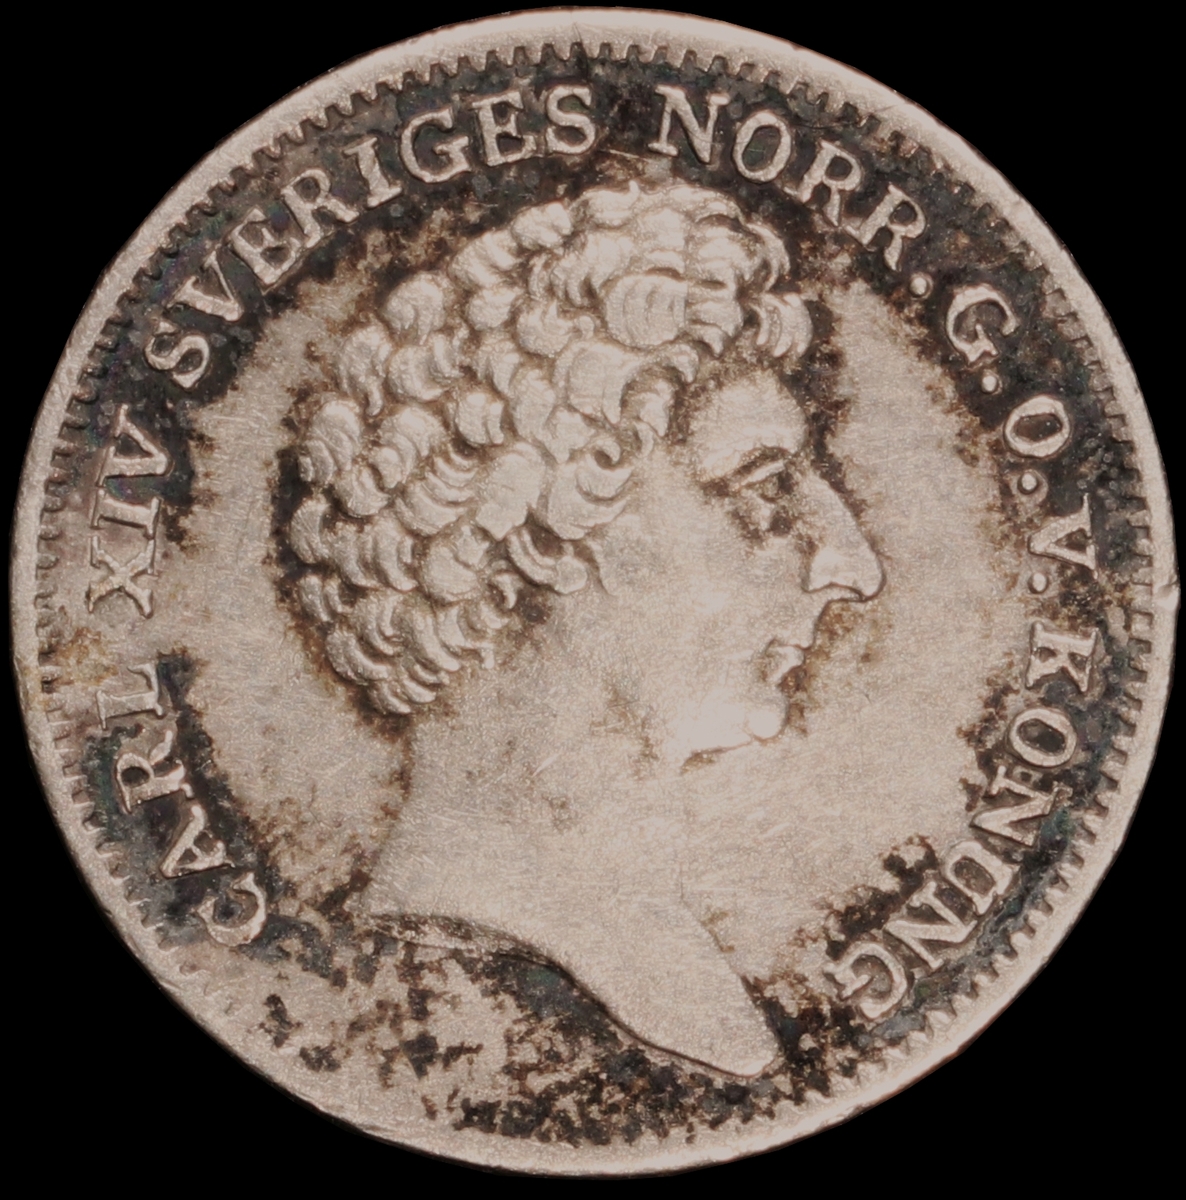 Mynt med valören 1/12 riksdaler specie. Åtsidan har en bild av Kung Karl XIV Johan och frånsidan visar lilla riksvapnet, valör samt kungens valspråk "Folkets kärlek min belöning".